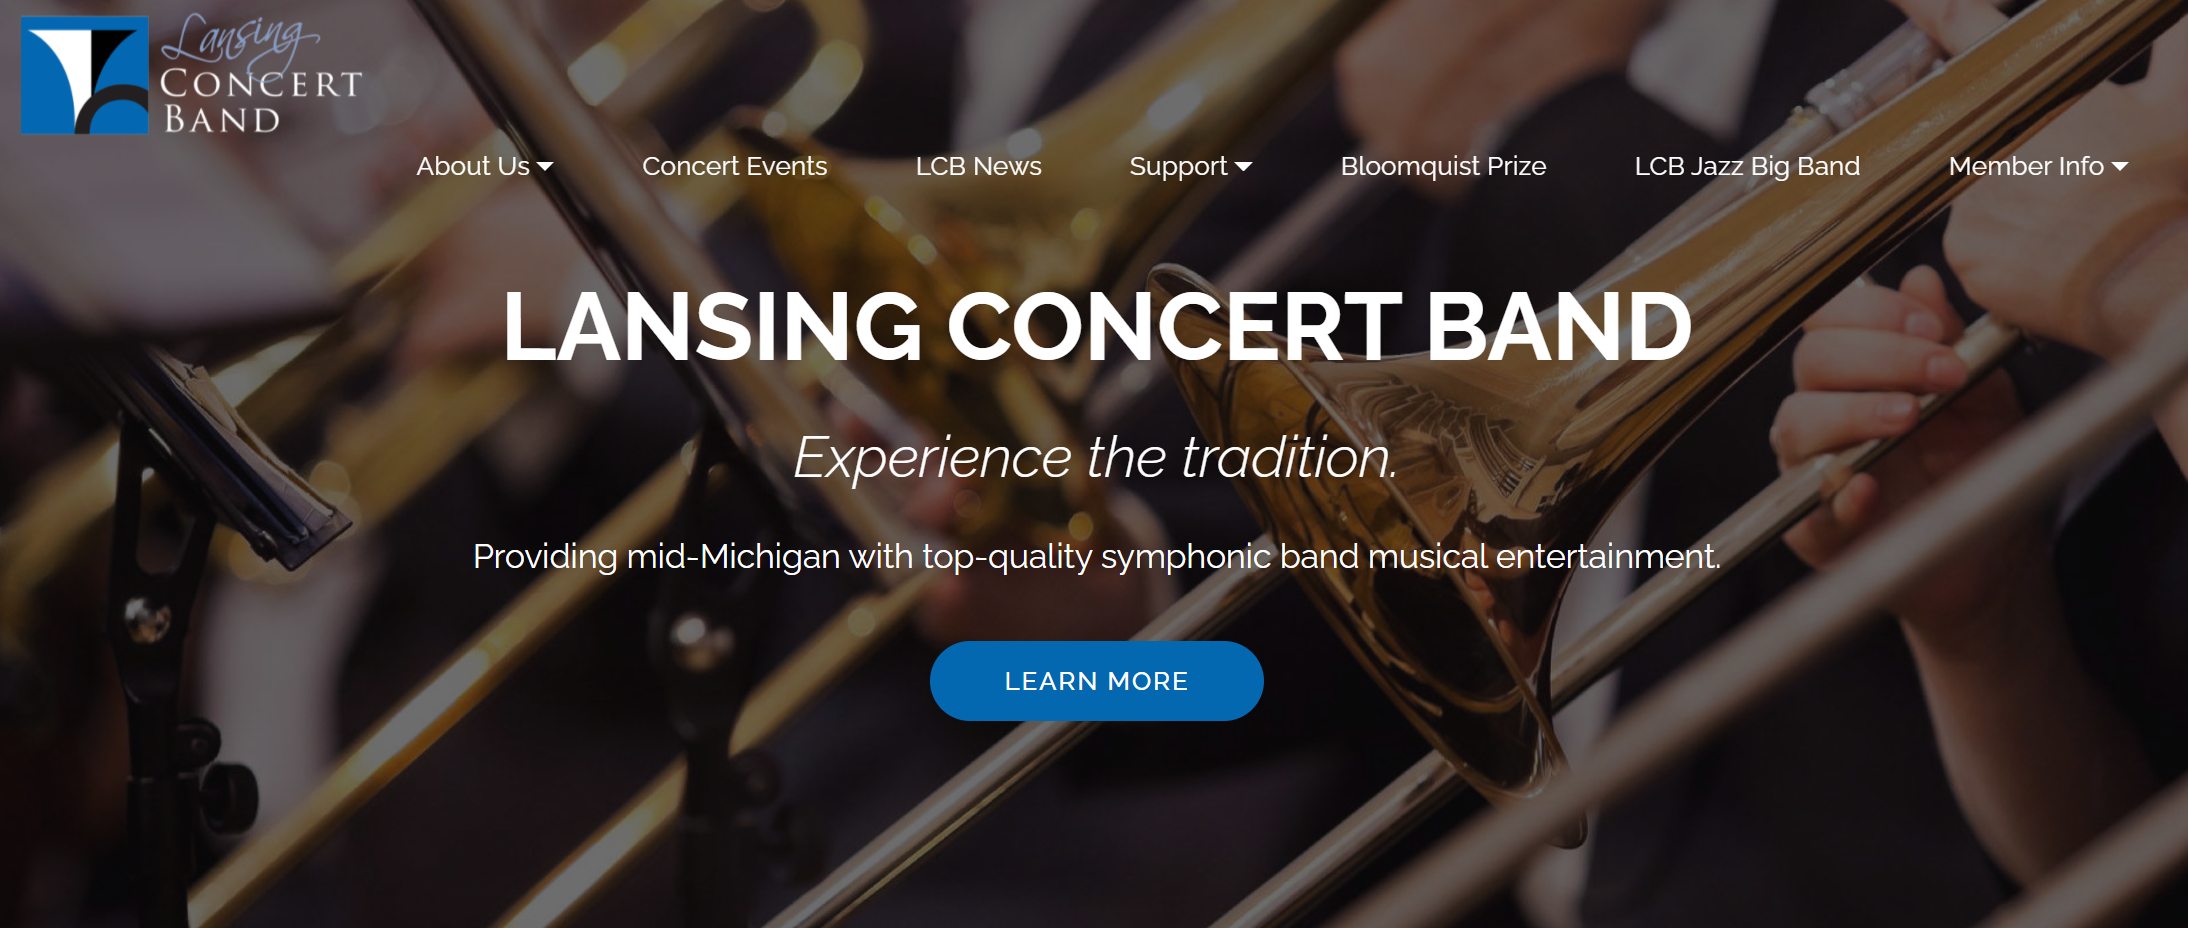 Lansing Concert Band website - visit lansingconcertband.org to view site design